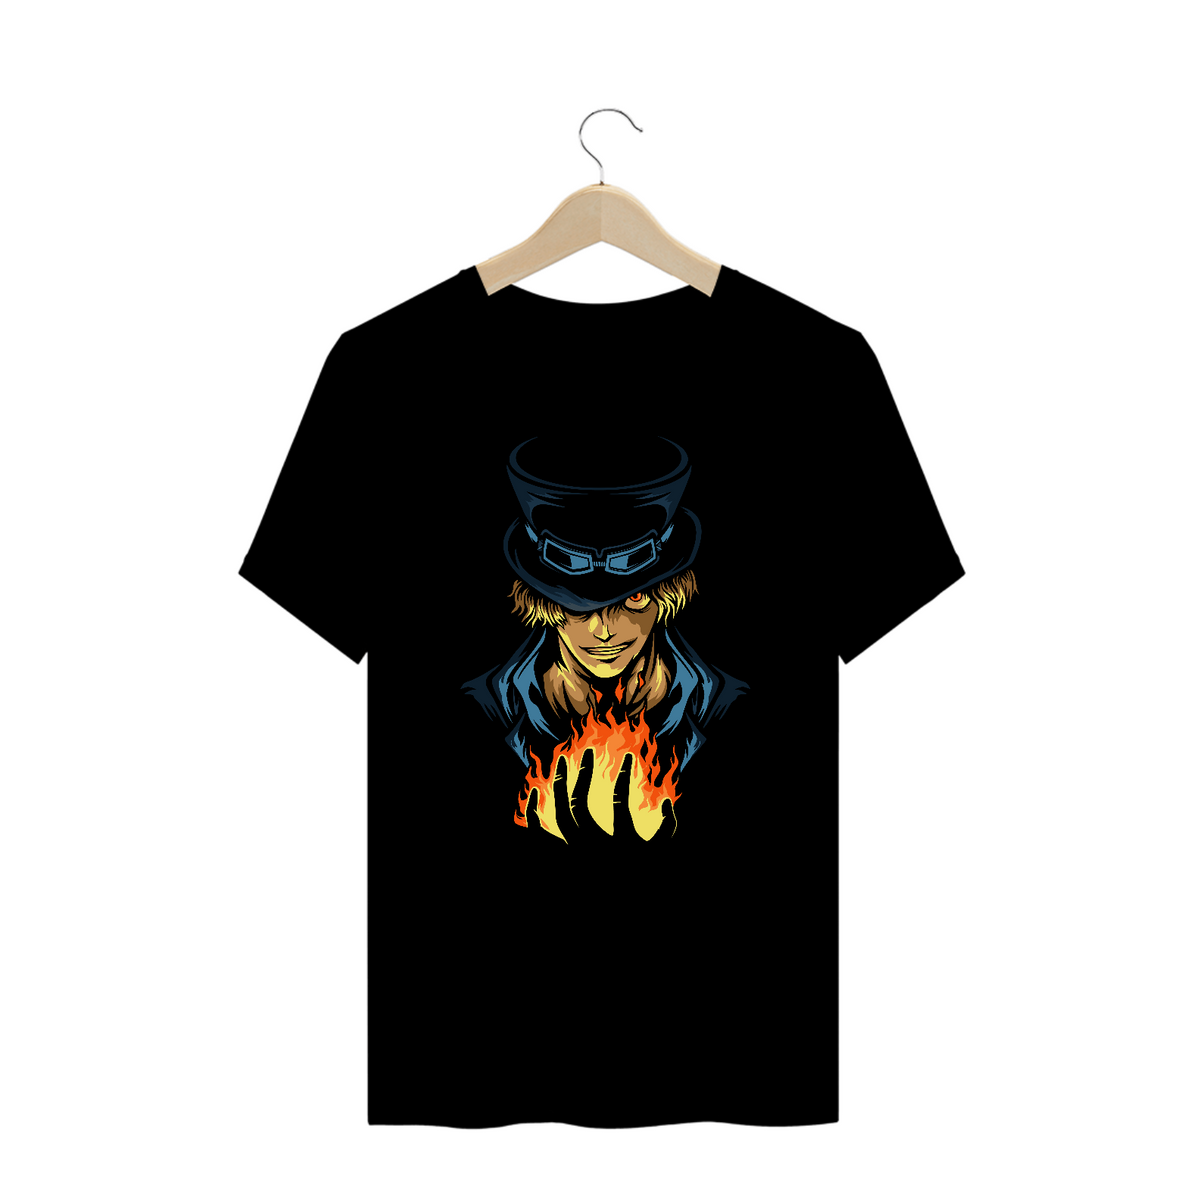 Nome do produto: Camiseta Plus Size: Sabo (One Piece)